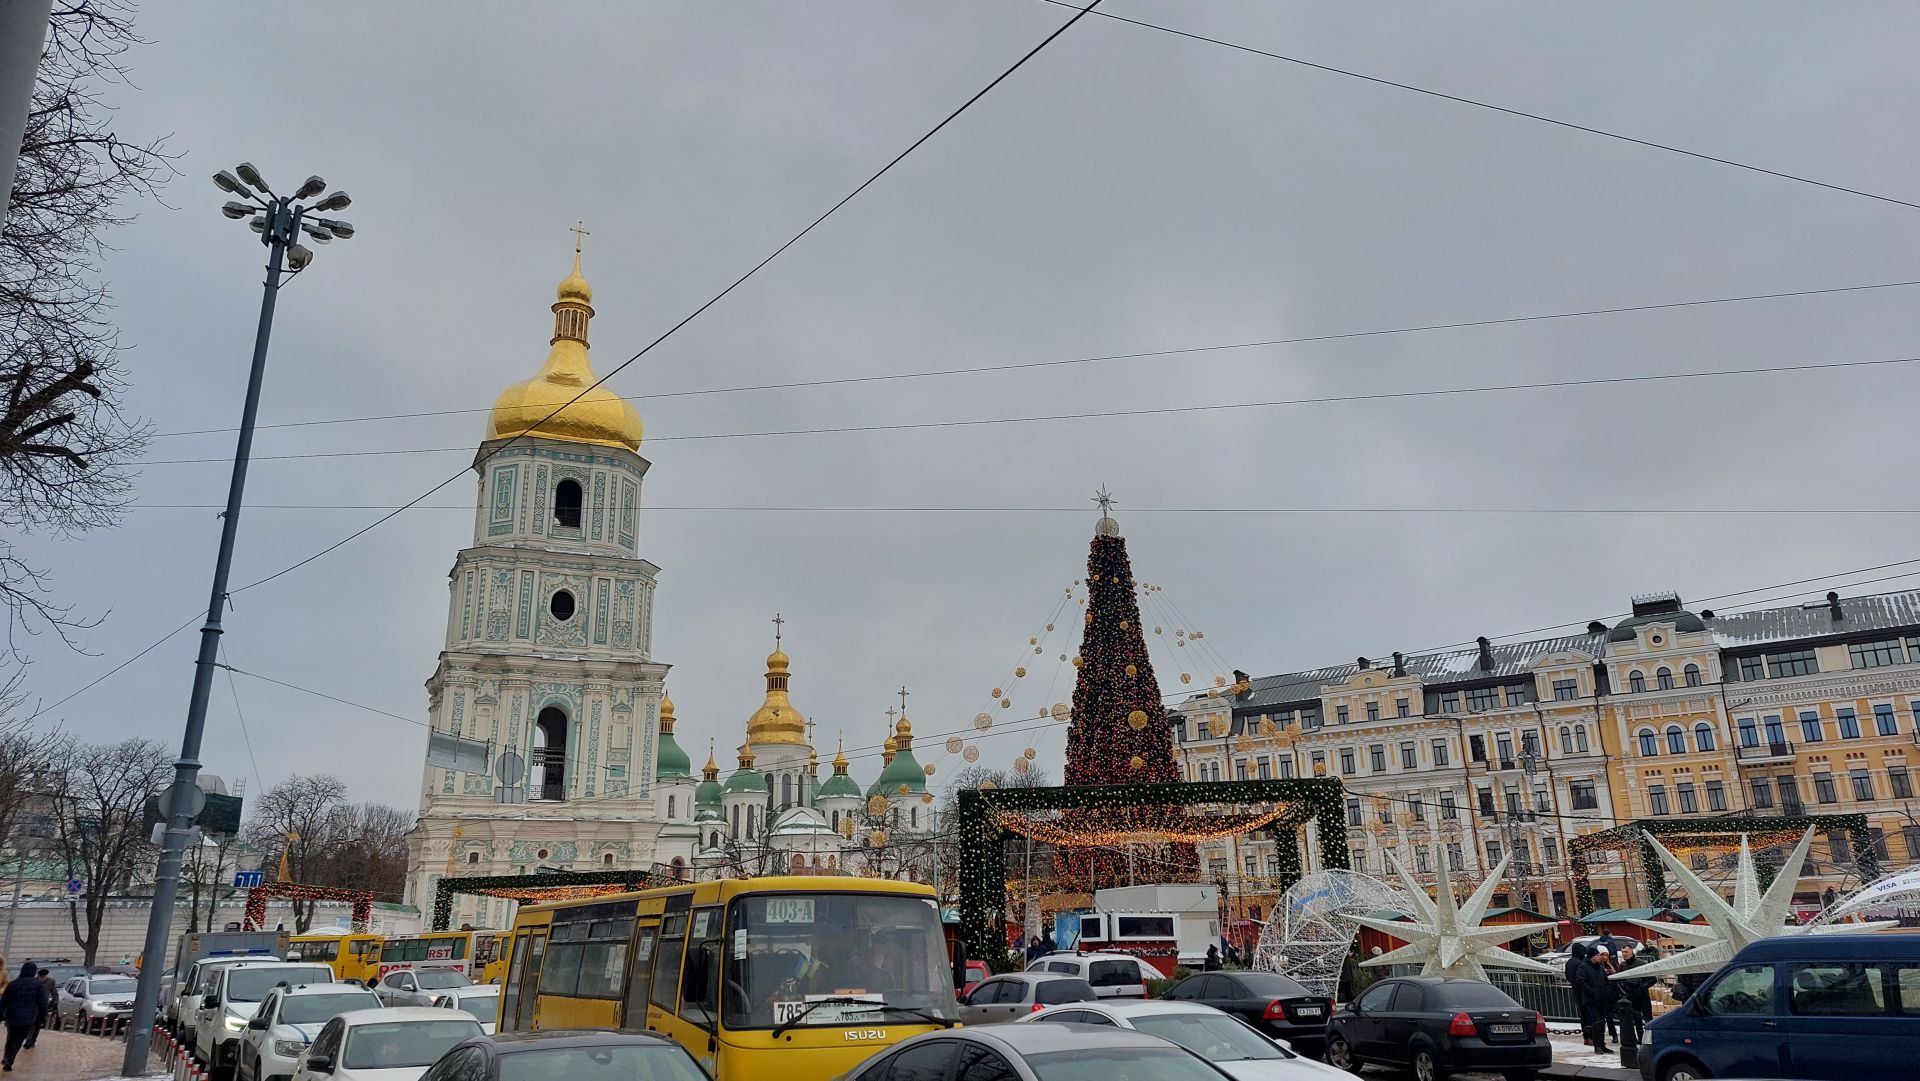 Михайловския площад и гледка към катедралния храм "Св. София"